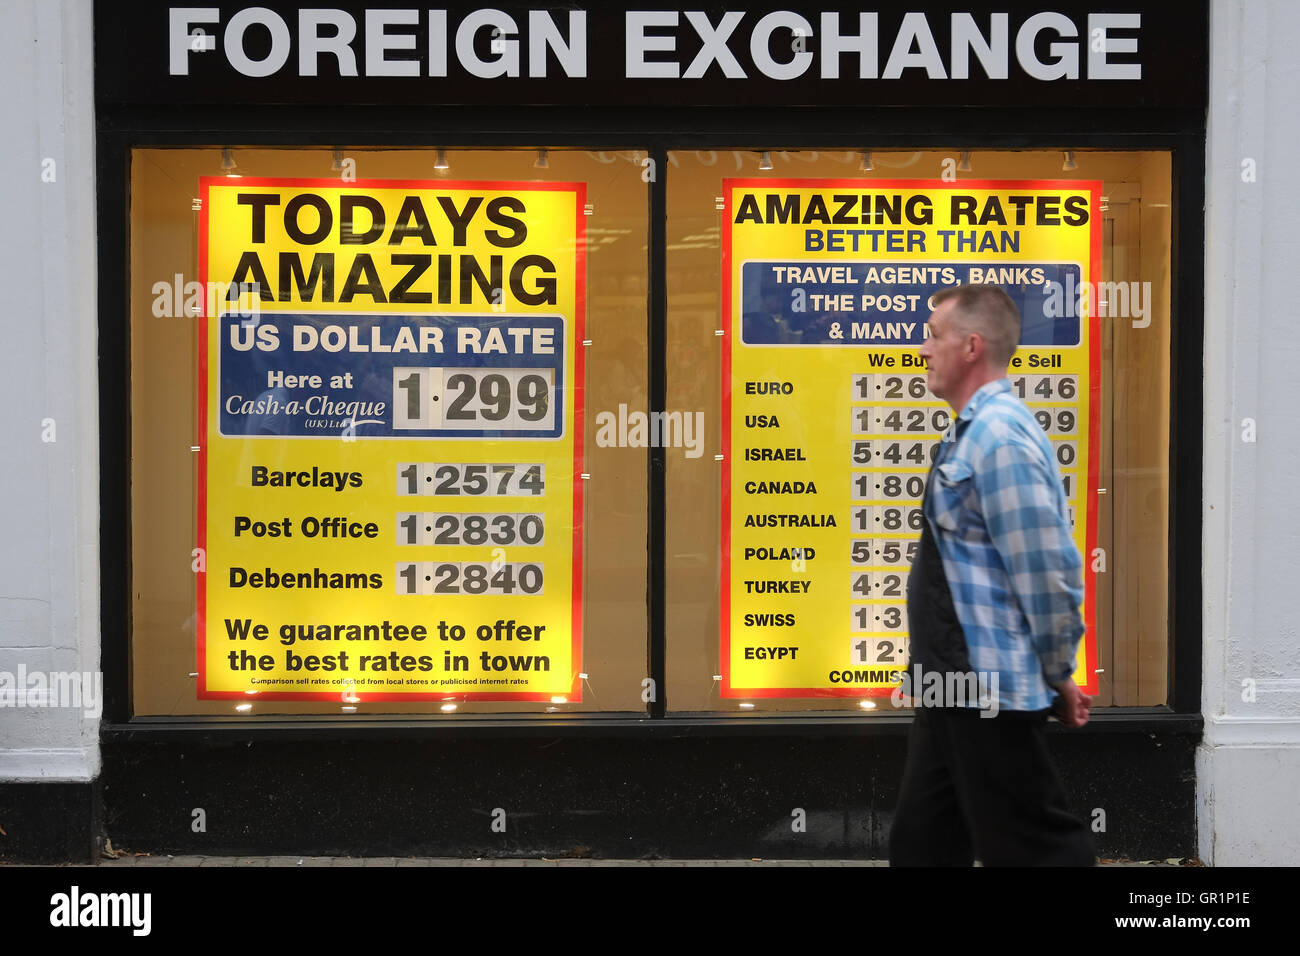 Foreign exchange shopfront Stock Photo